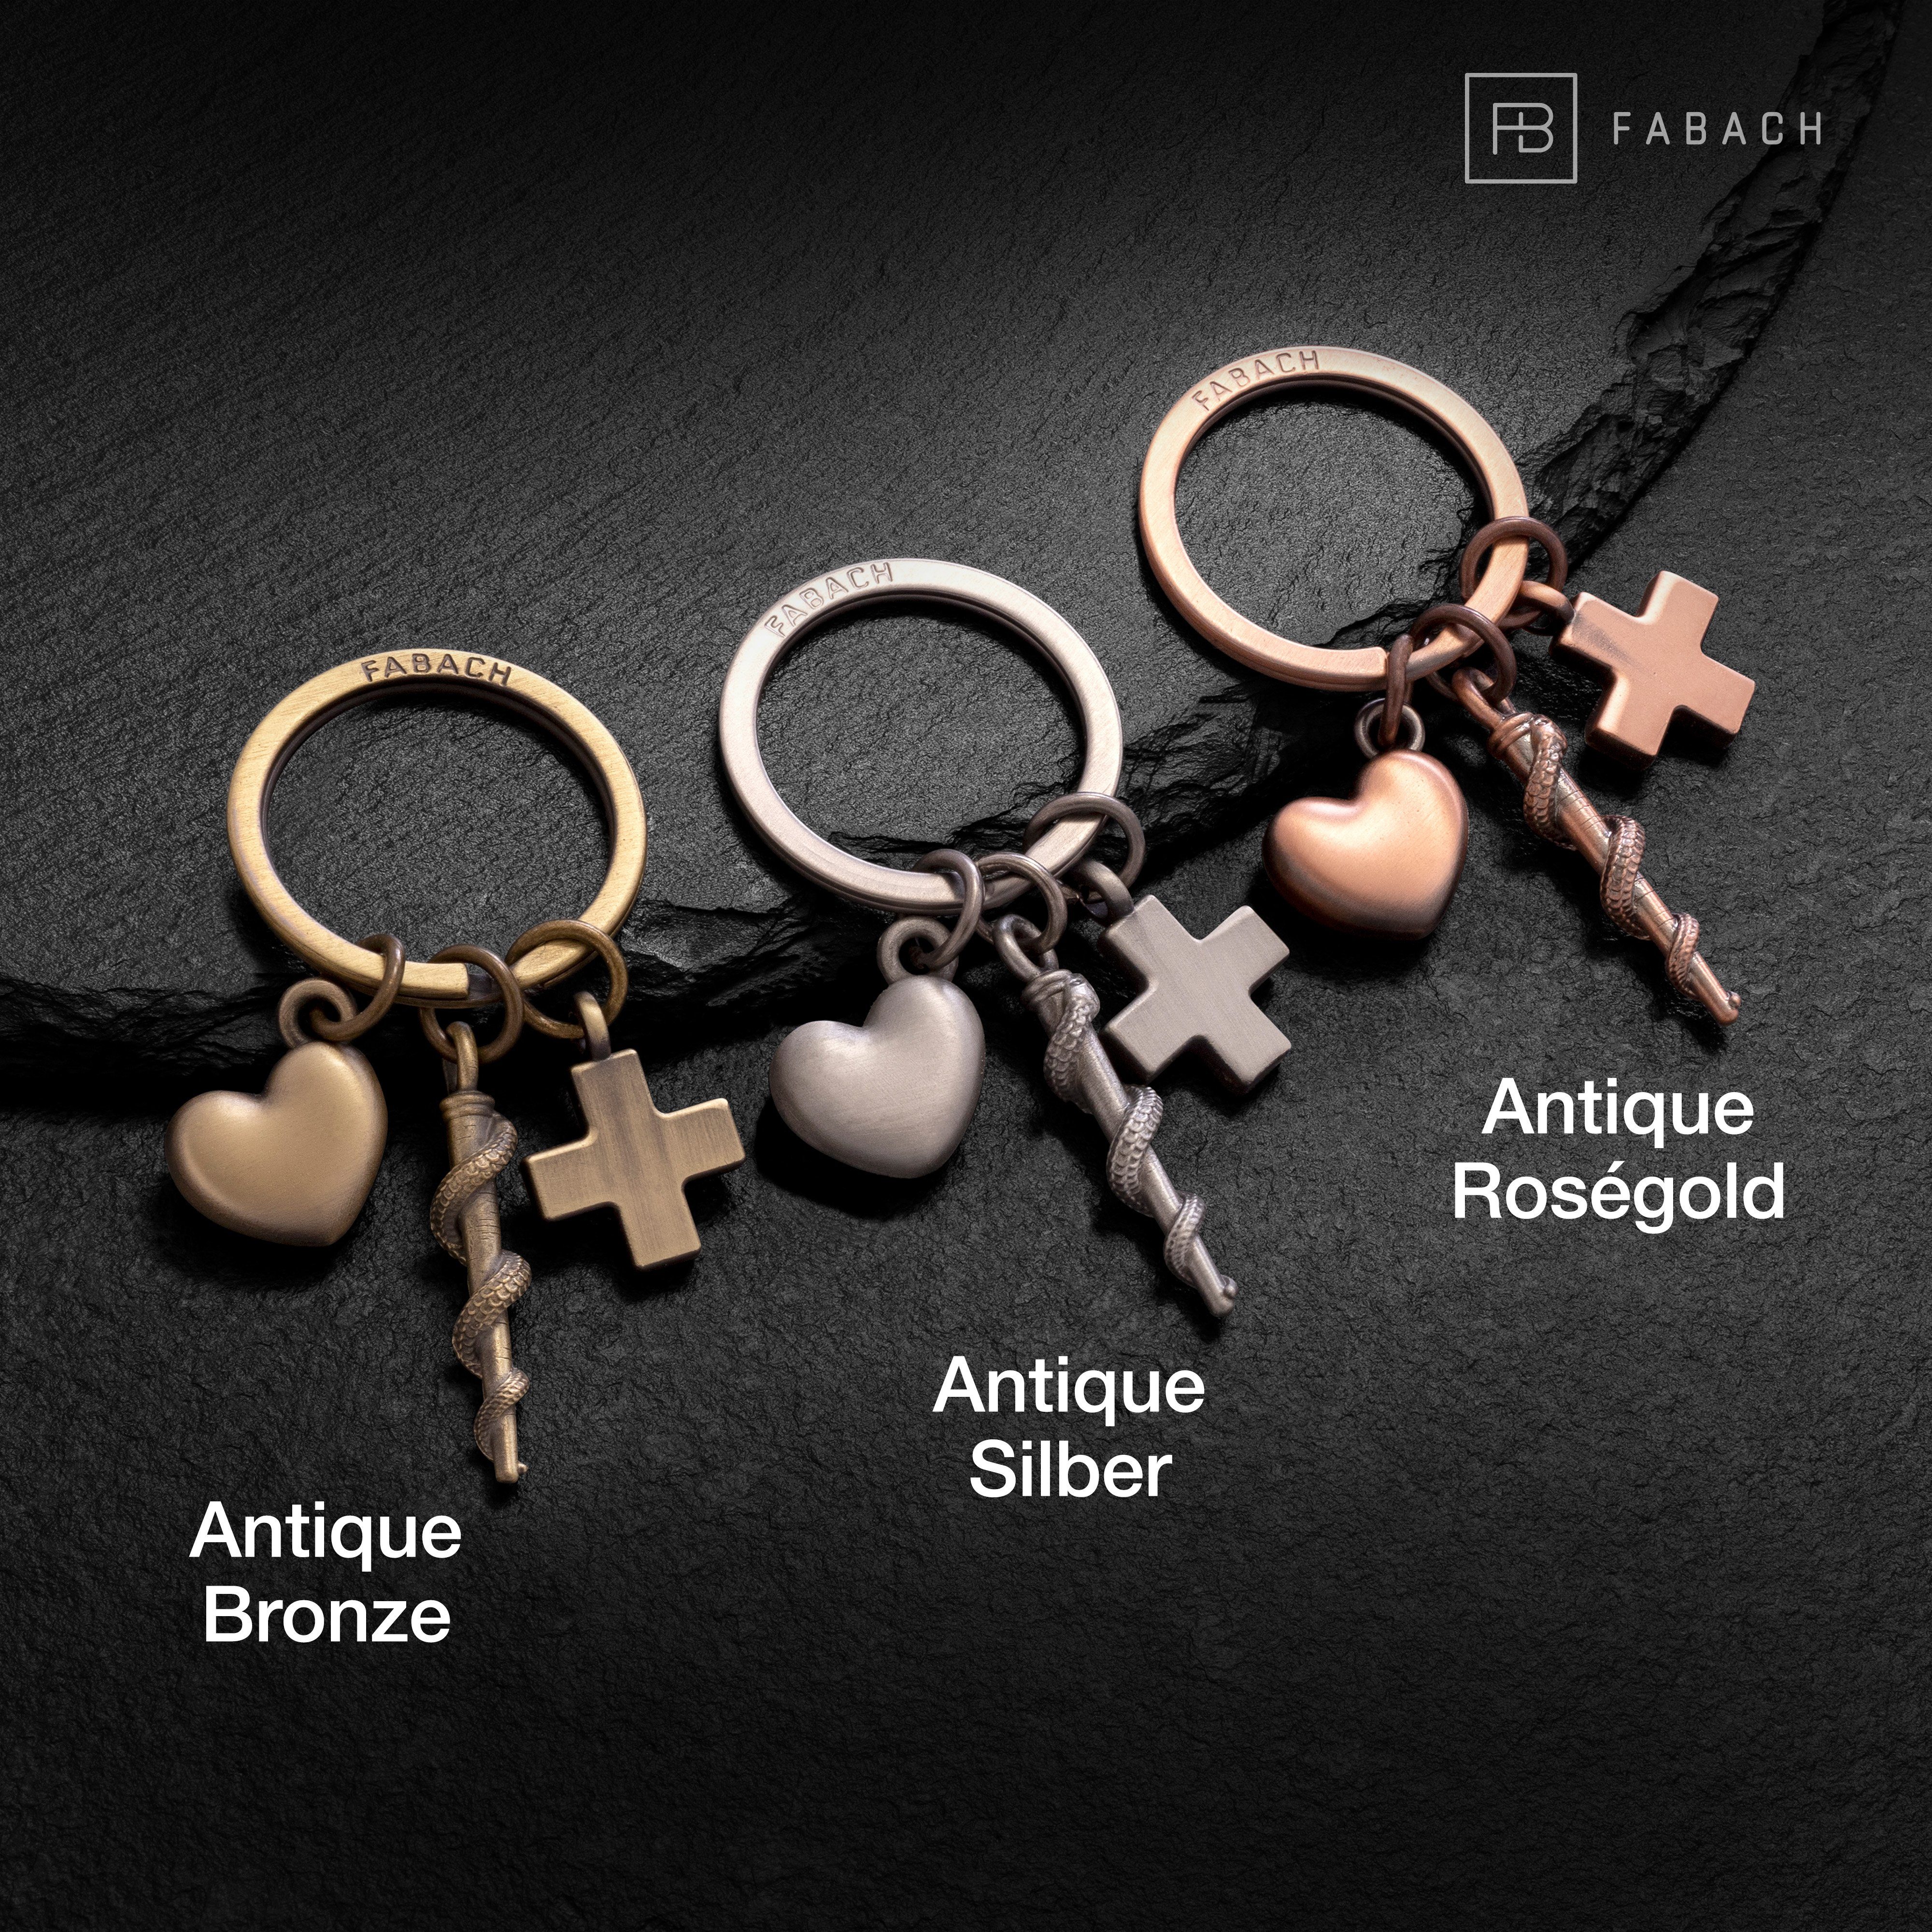 FABACH Schlüsselanhänger und Asklepios Schlüsselanhänger mit Antique Äskulapstab Herz Bronze Kreuz